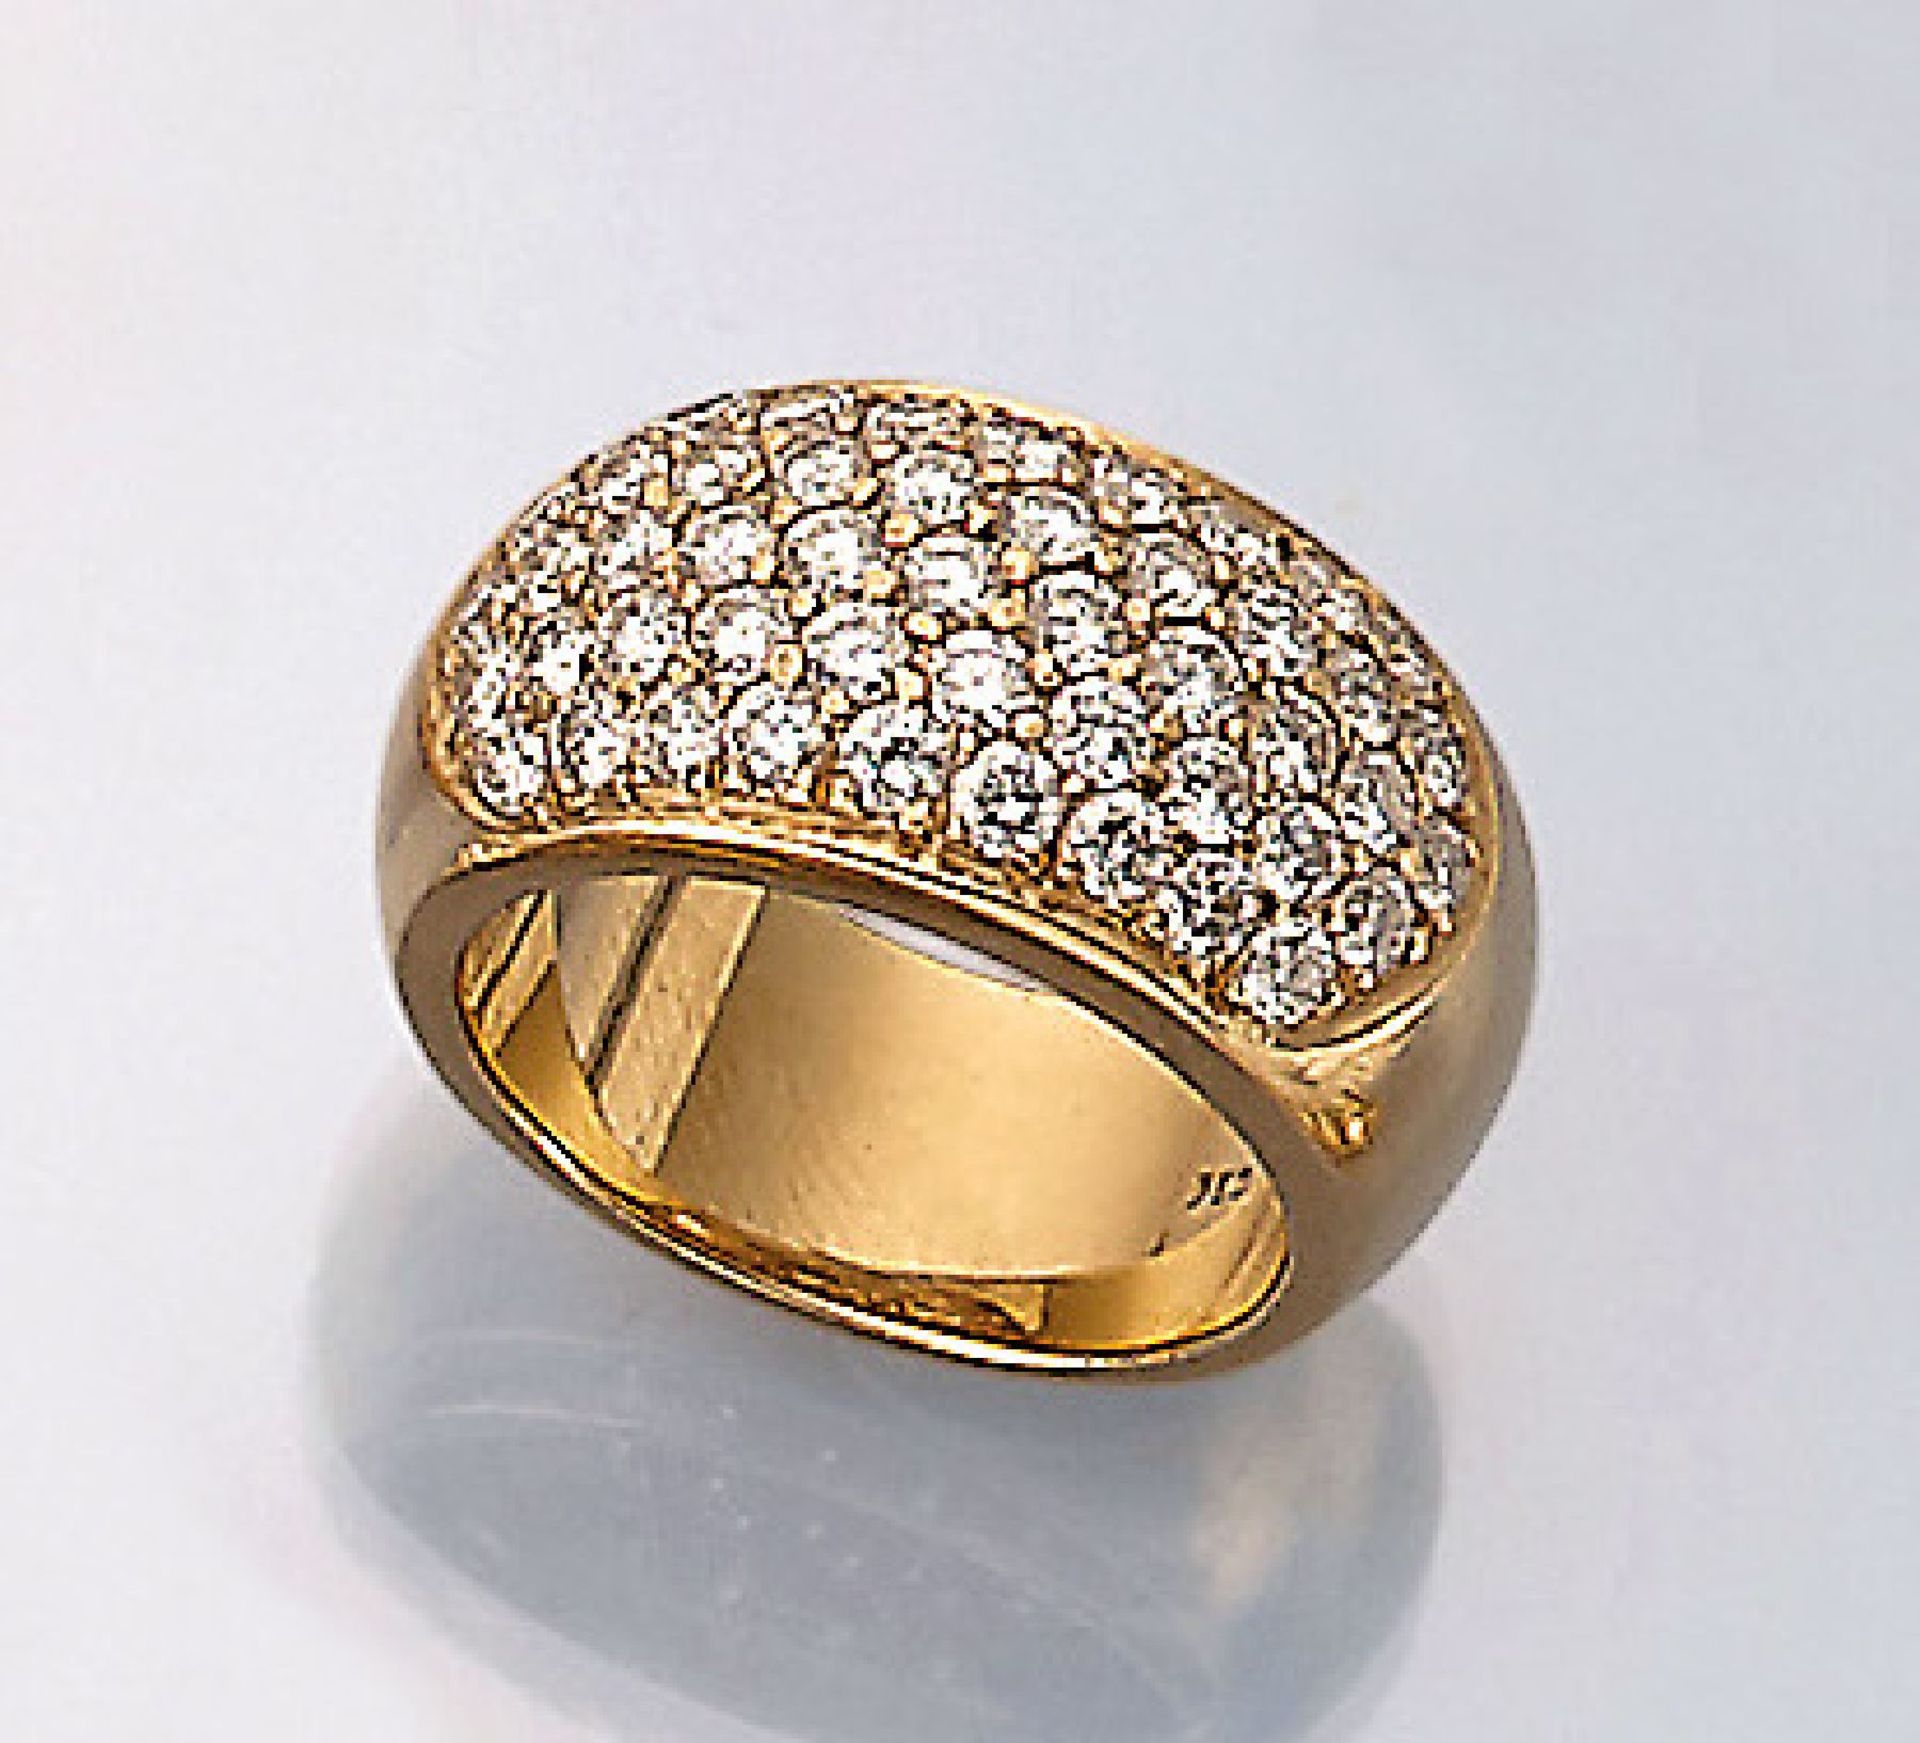 18 kt Gold Ring mit Brillanten, GG 750/000,Brillanten zus. ca. 2.0 ct feines Weiß-Weiß/ lr-si, RW